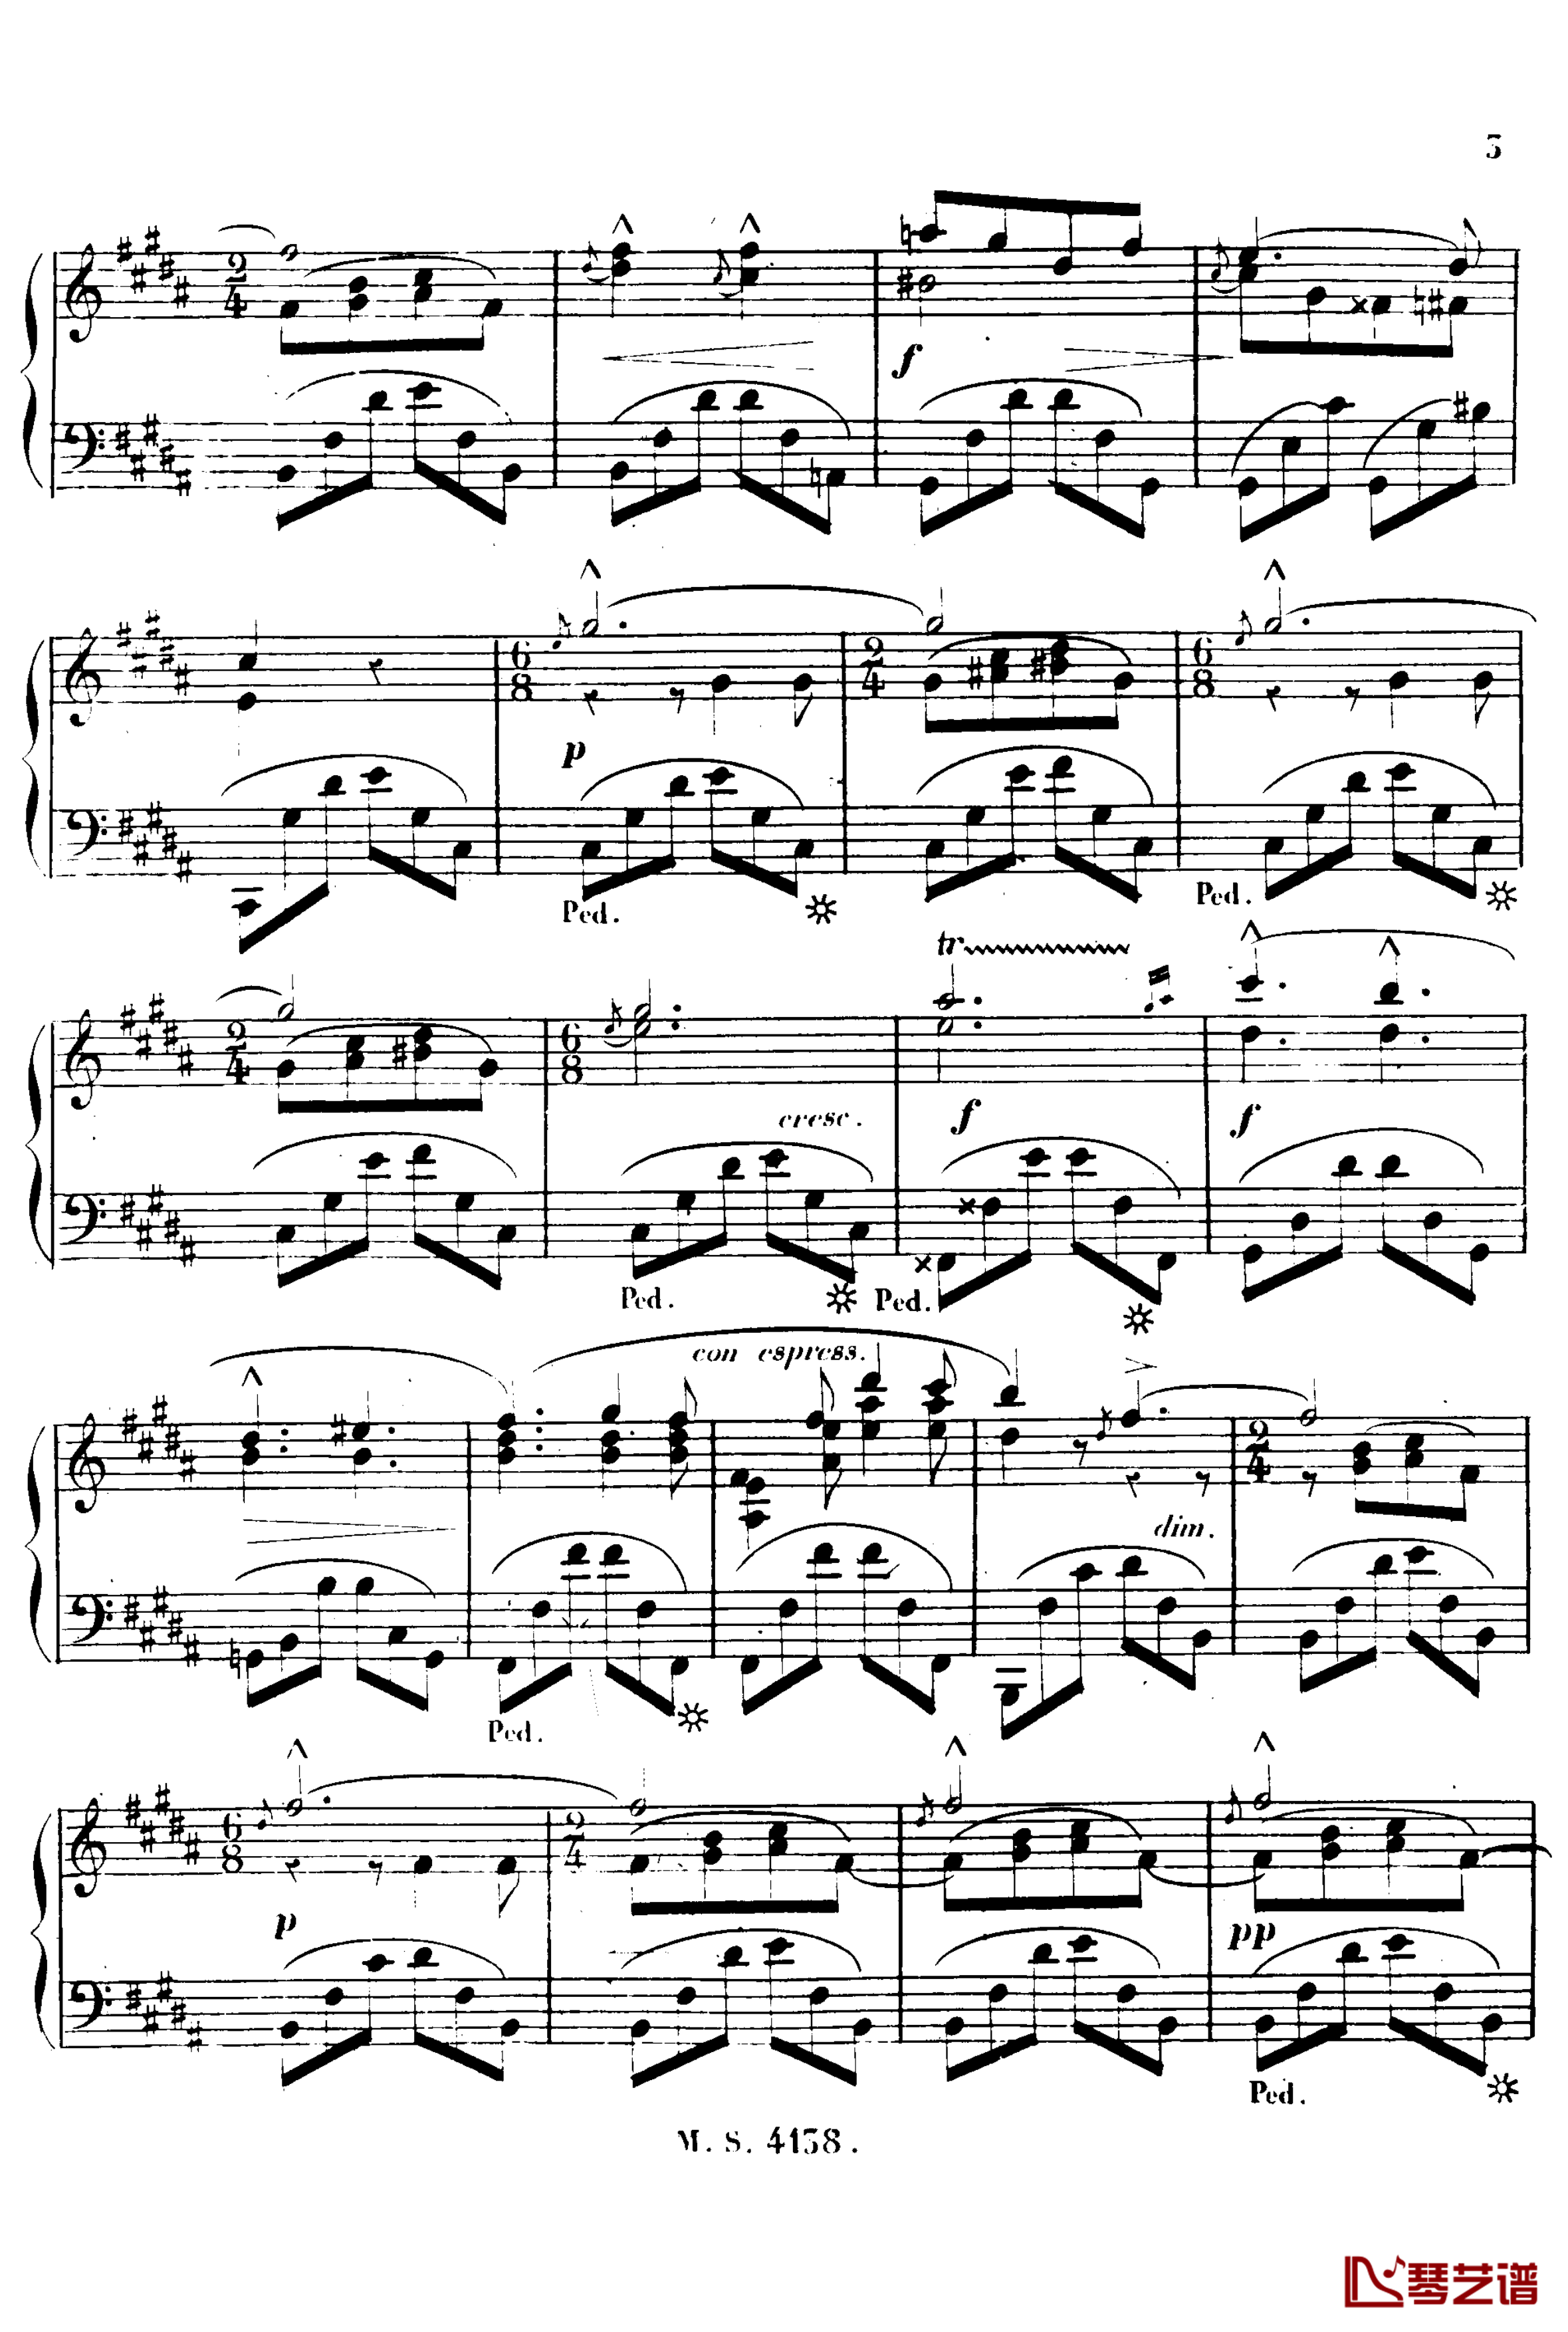 B大调夜曲 Op.51b钢琴谱-塔尔贝格4